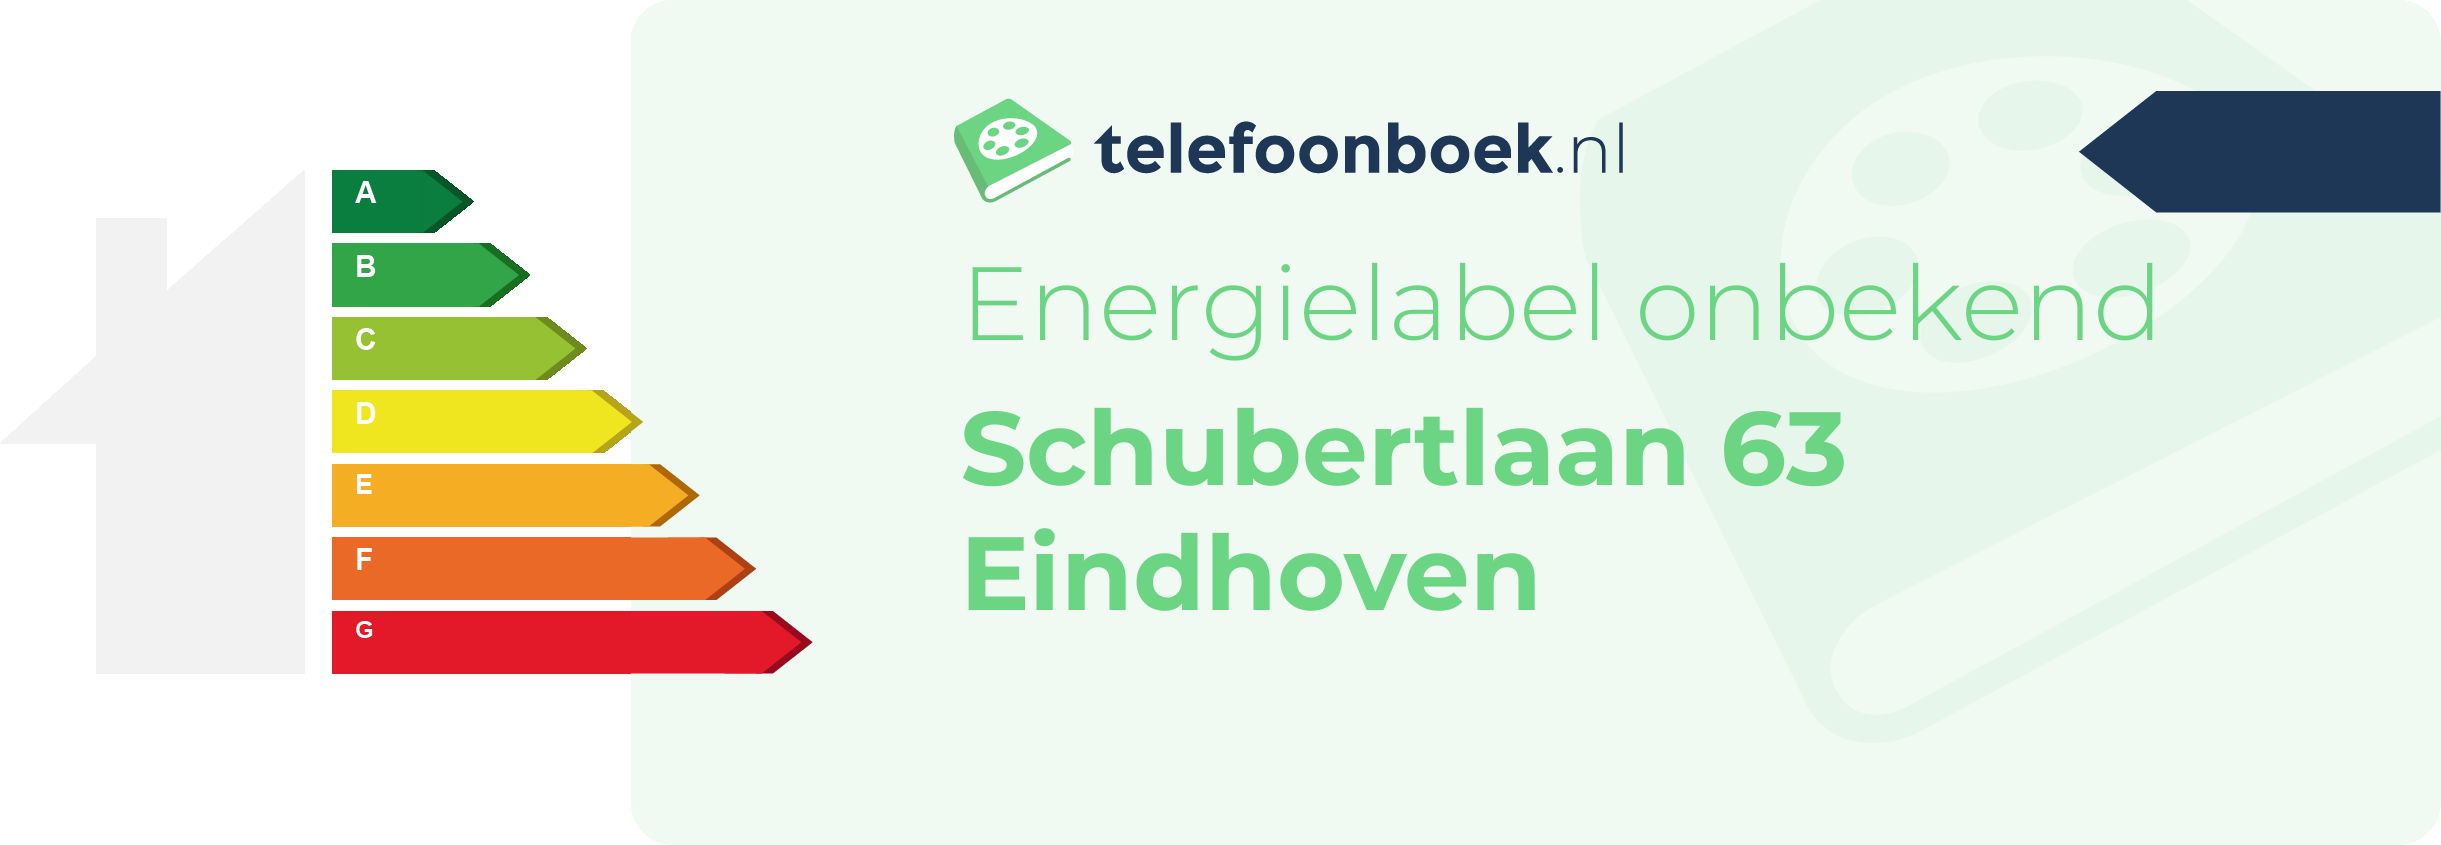 Energielabel Schubertlaan 63 Eindhoven